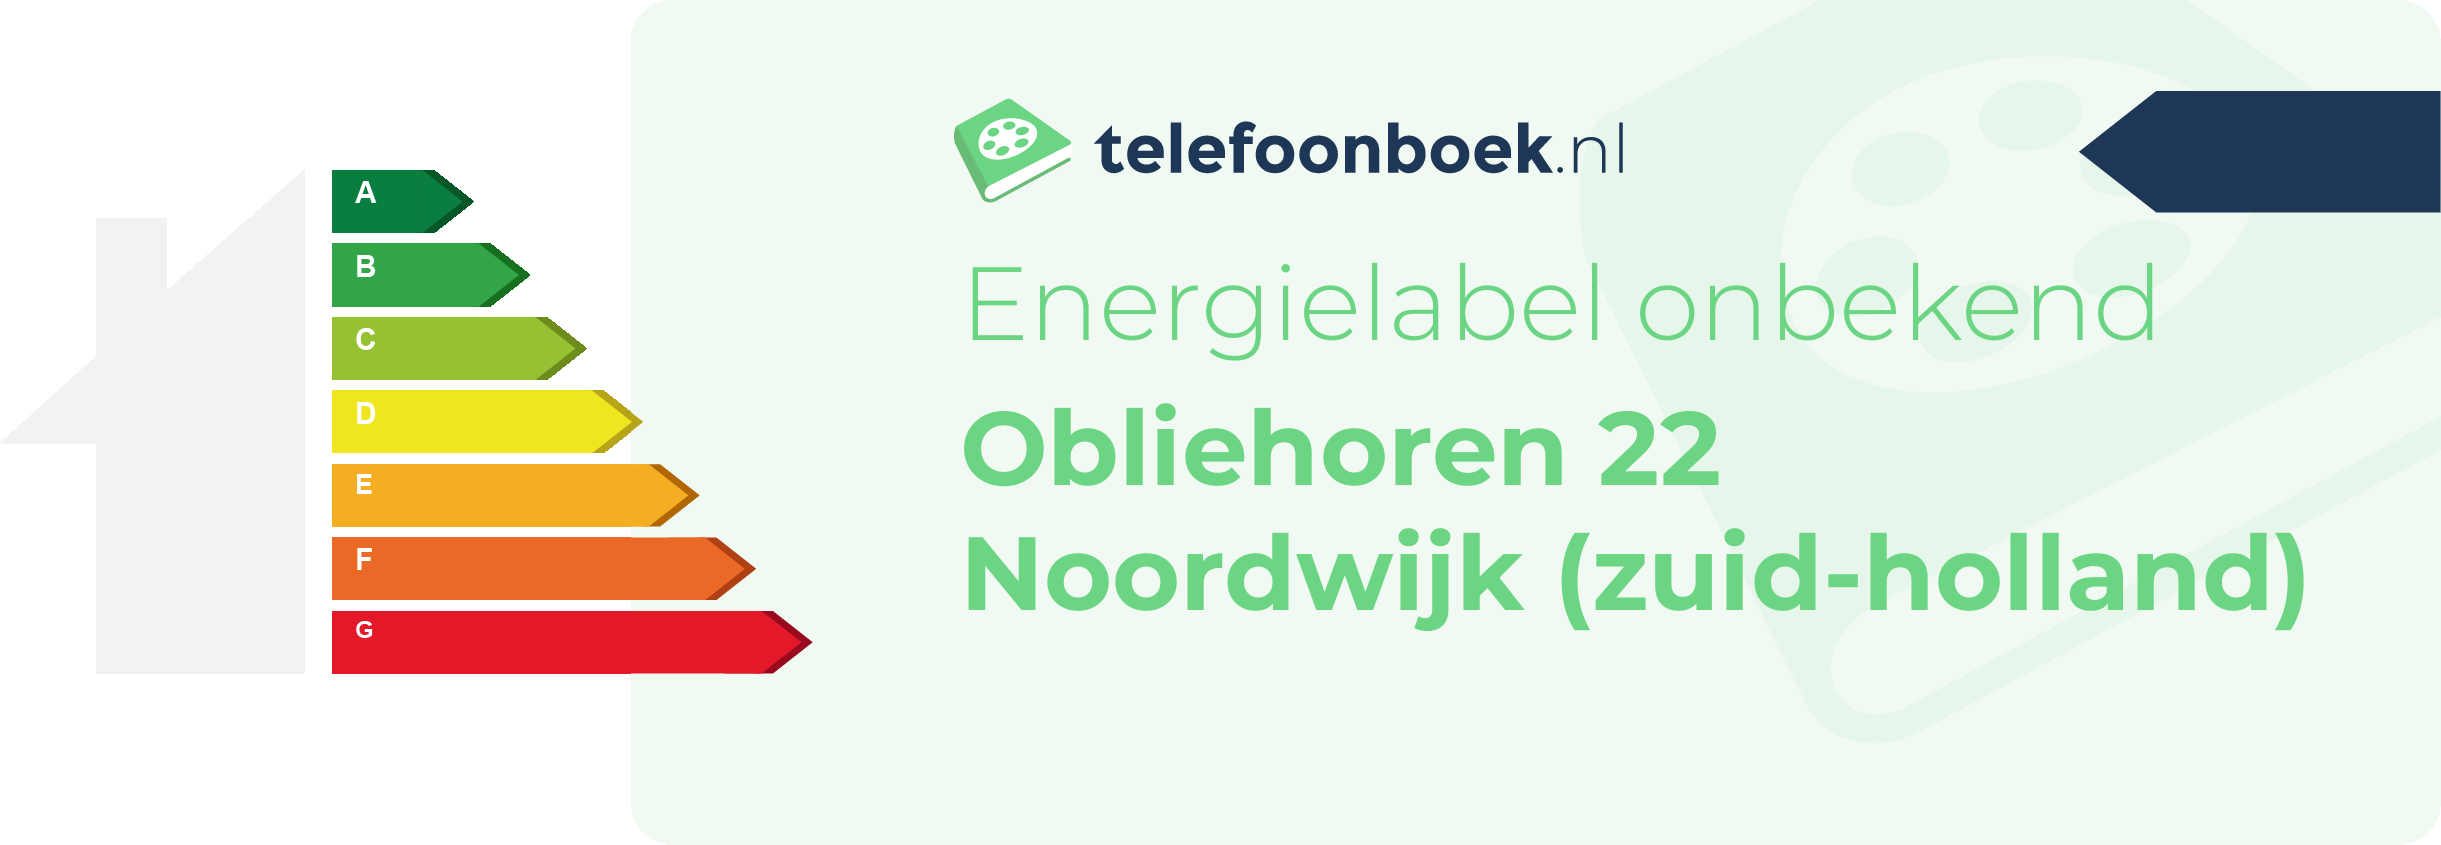 Energielabel Obliehoren 22 Noordwijk (Zuid-Holland)